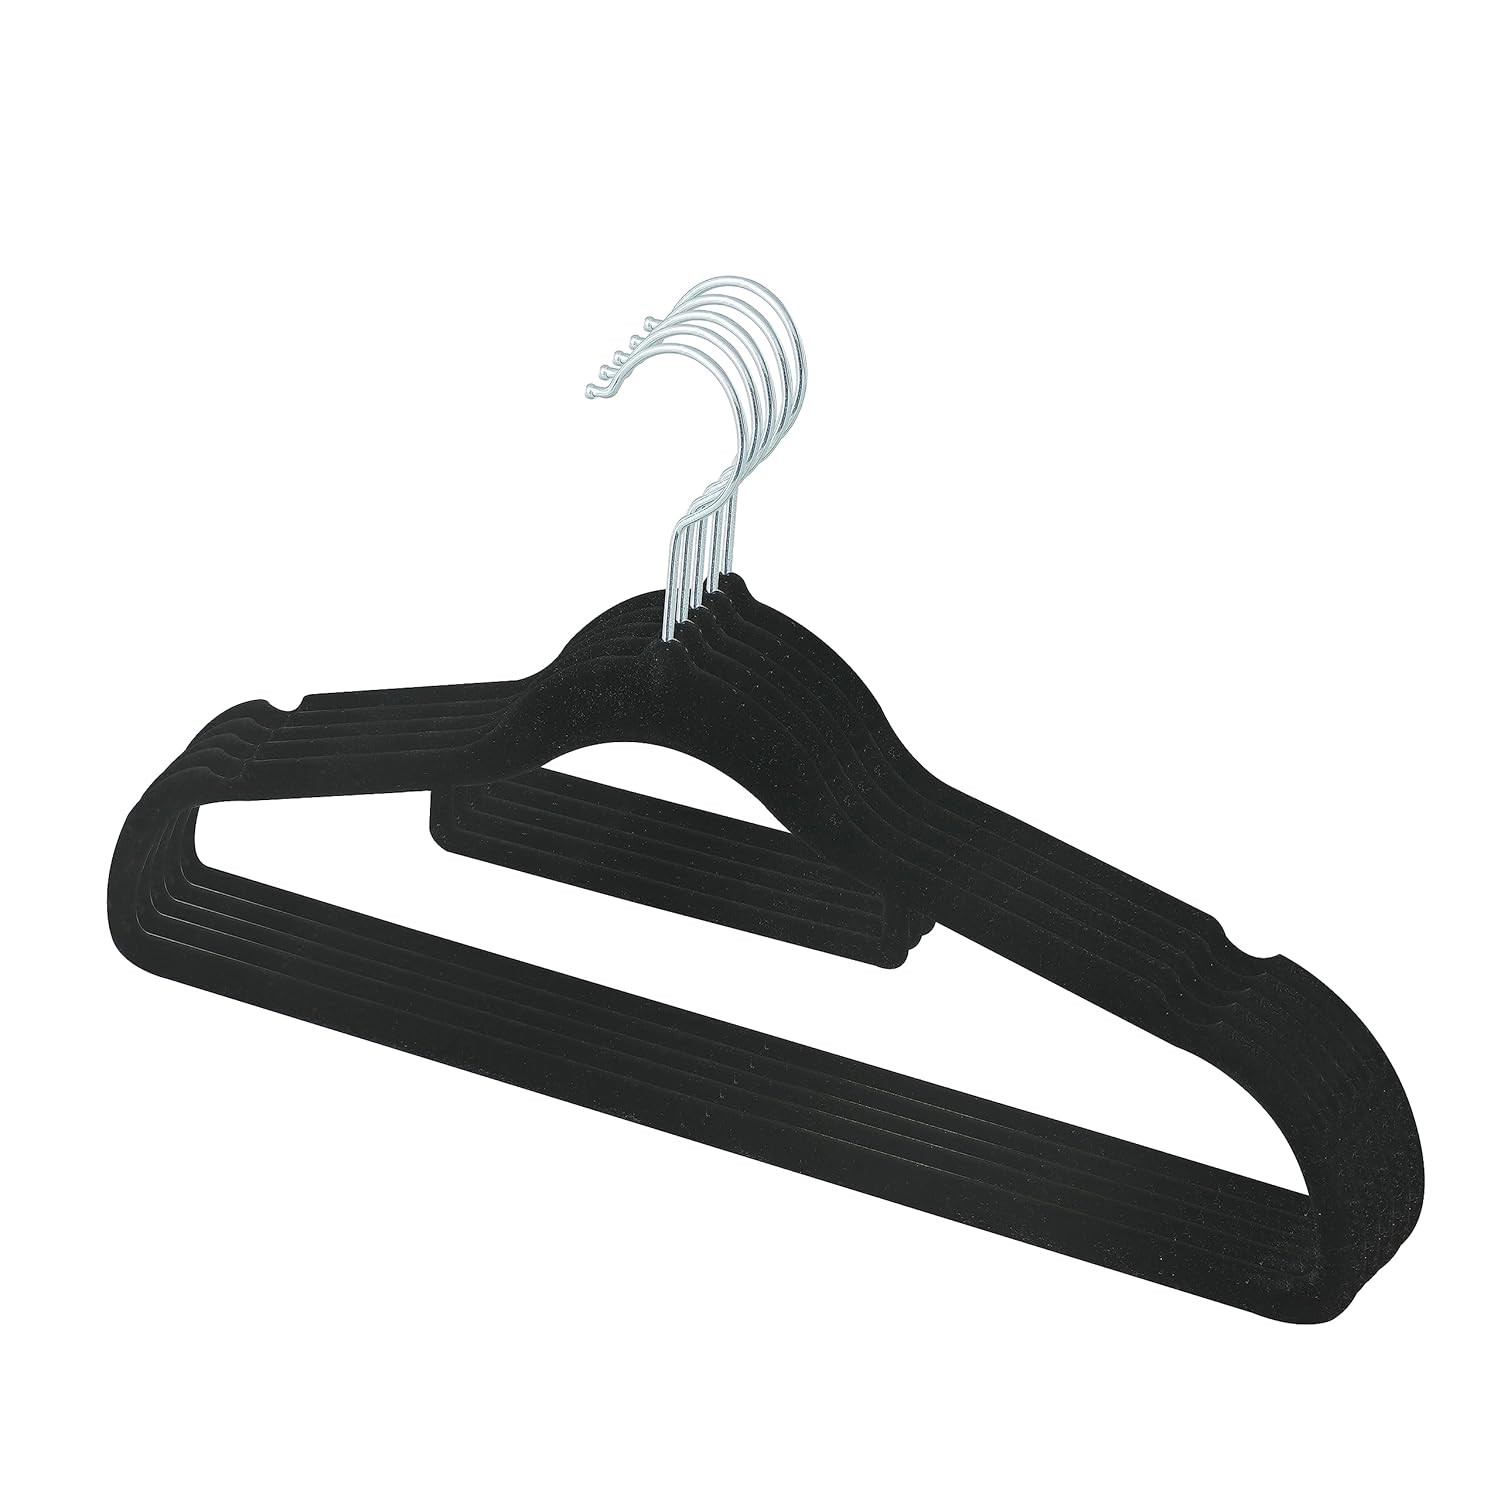 Kuber IndustriesVelvet Cloth Hanger Set of 5 With Chromed Plated Steel Hook (Black)